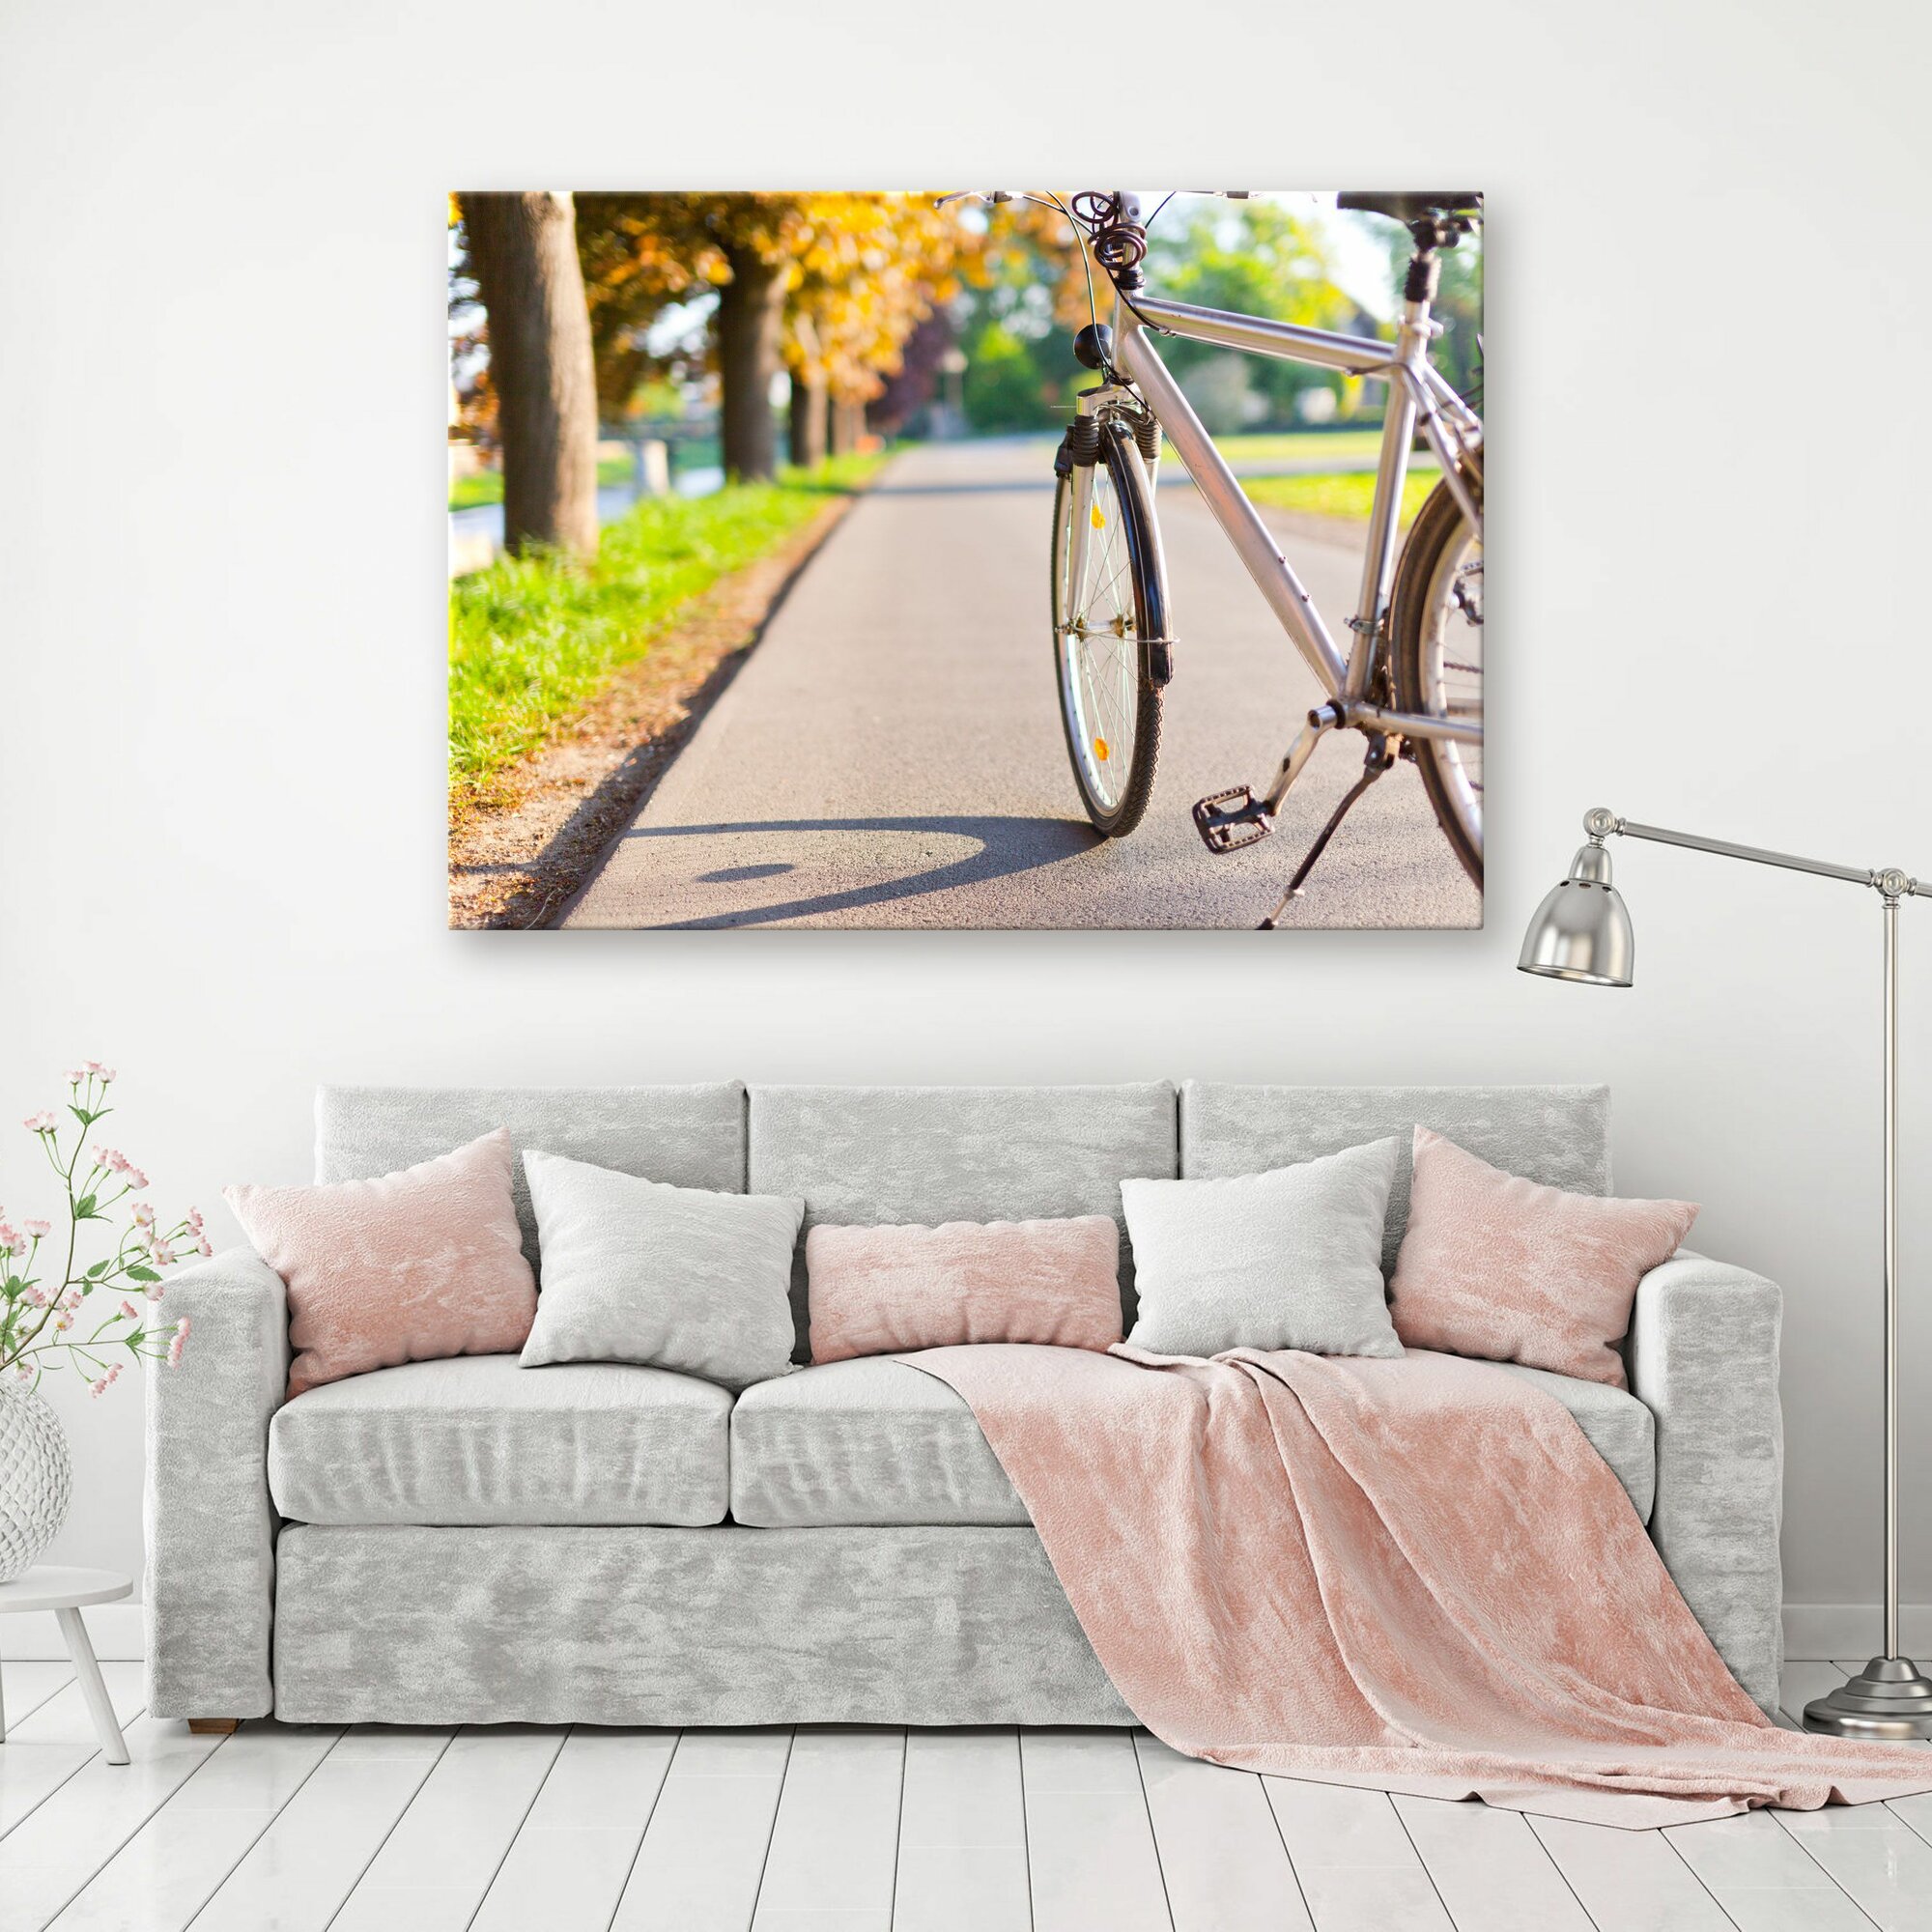 Картина на холсте "Велосипед, припаркованный на обочине дороги" 20x30 см. Интерьерная, на стену.